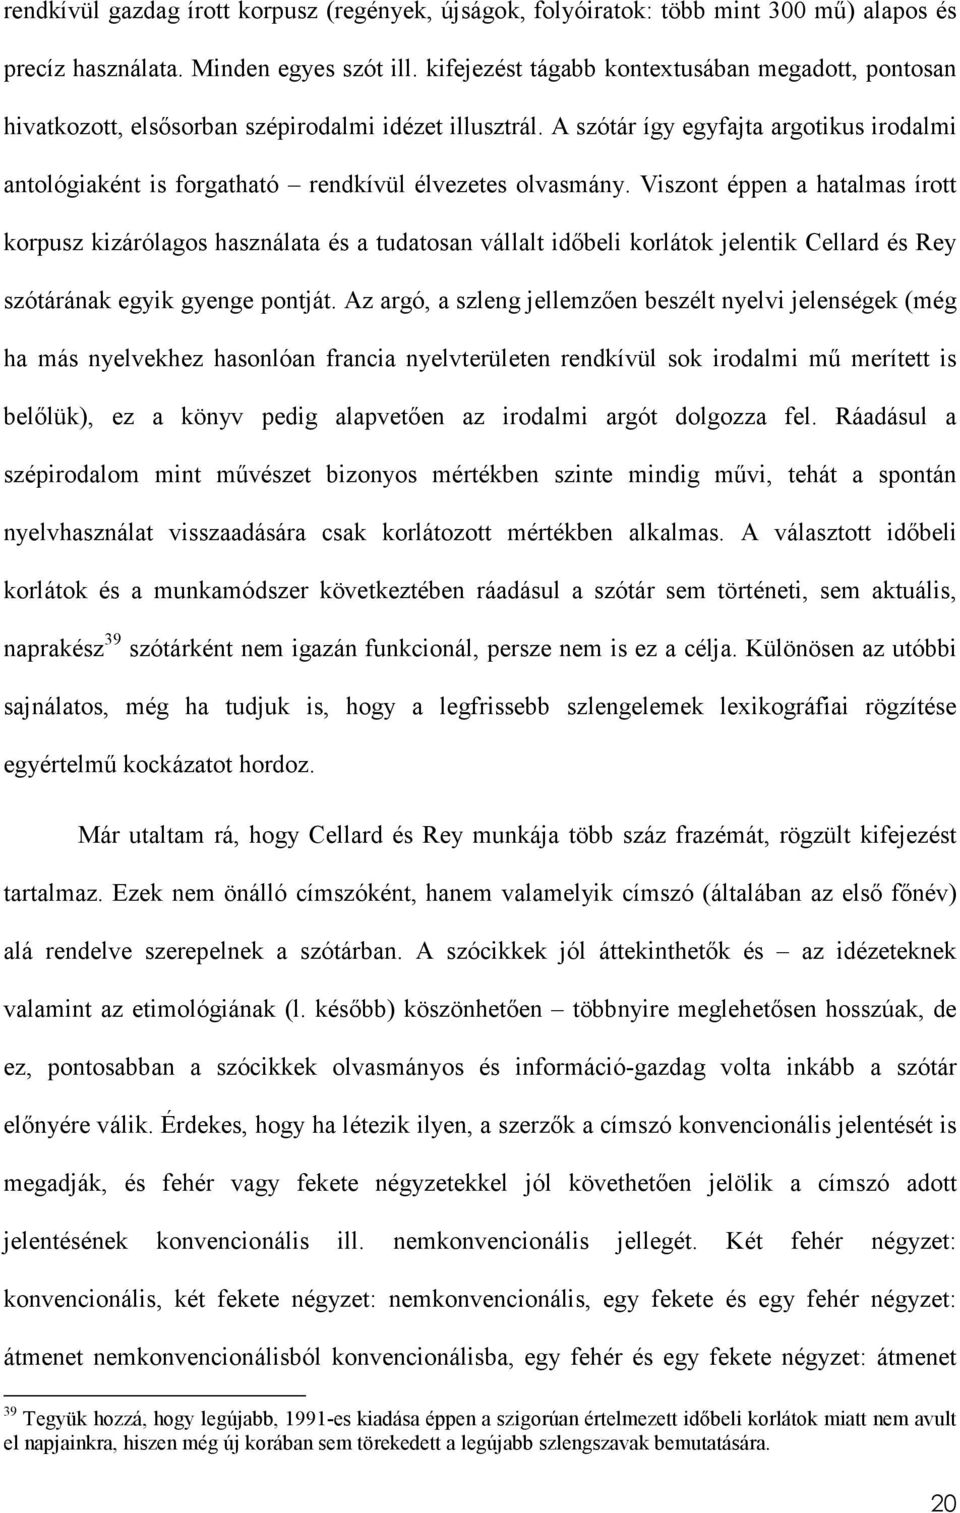 Szleng és lexikográfia. Argot et lexicographie - PDF Ingyenes letöltés